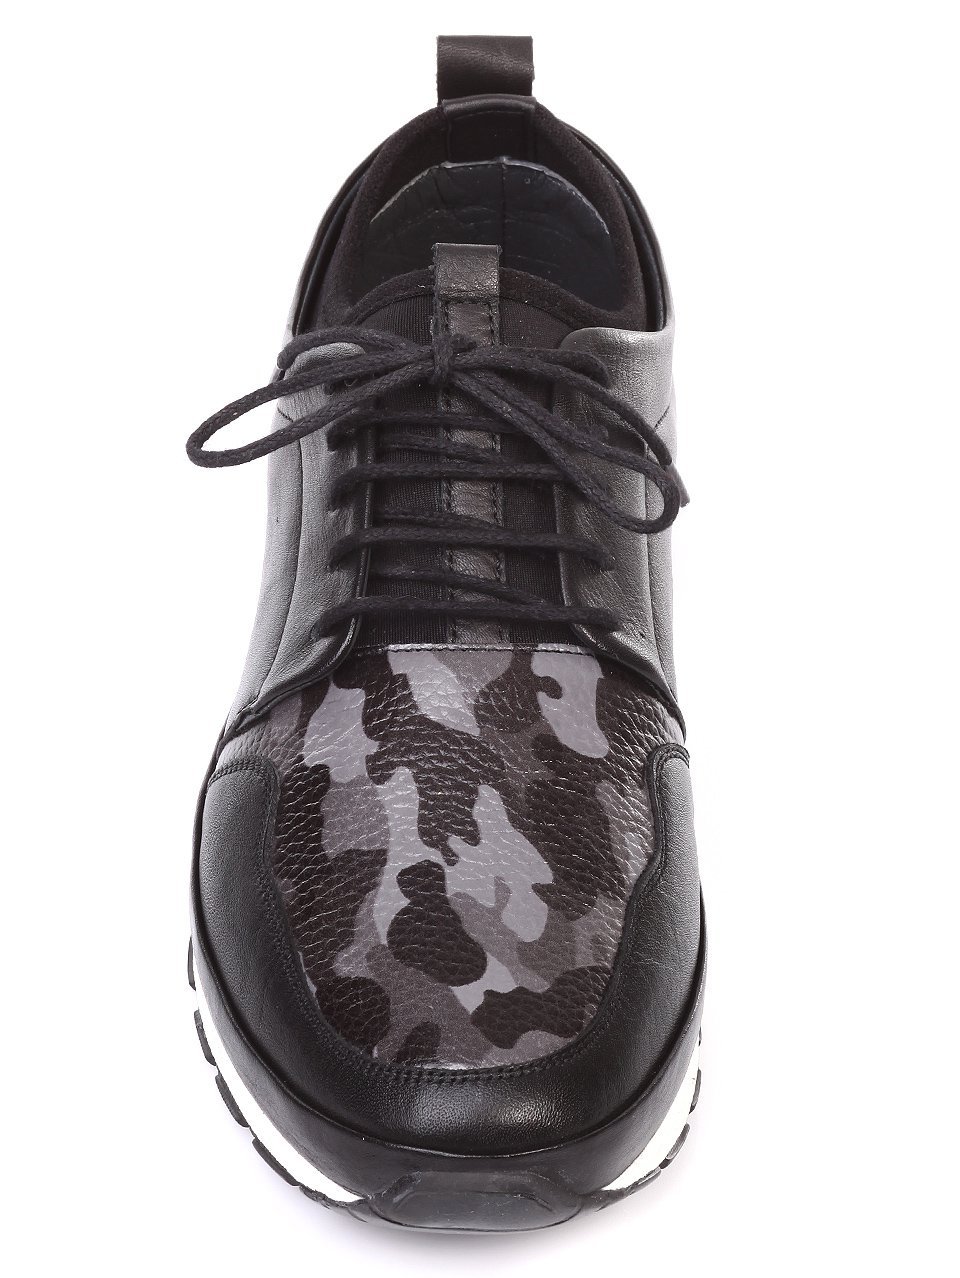 Ежедневни мъжки обувки от естествена кожа в черно 7AT-18561 mix